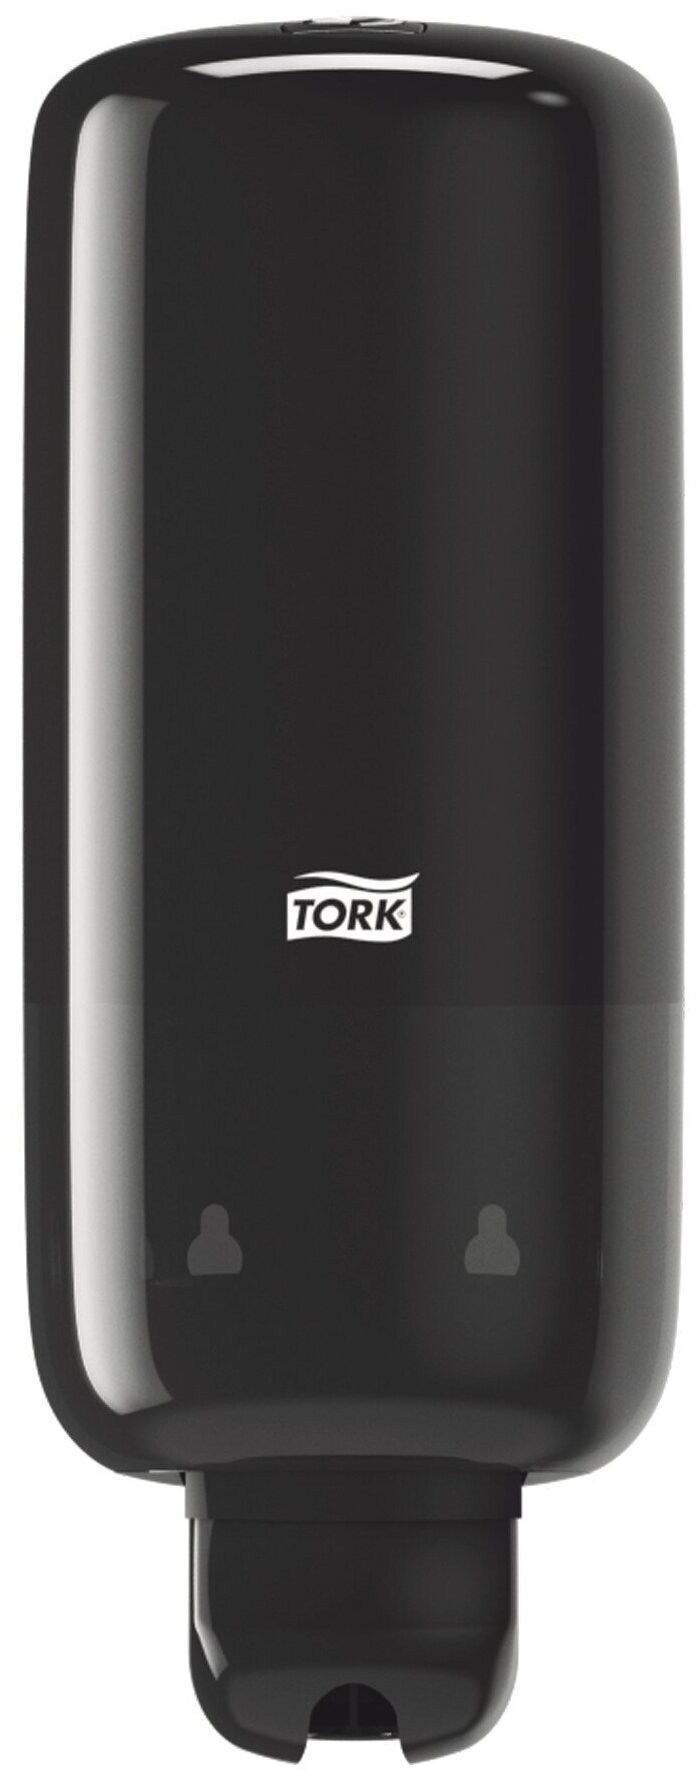 Tork Elevation диспенсер для жидкого мыло/спрей в картриджах, система S1, чёрный, способ подачи - механический, материал корпуса - пластик. (560008)